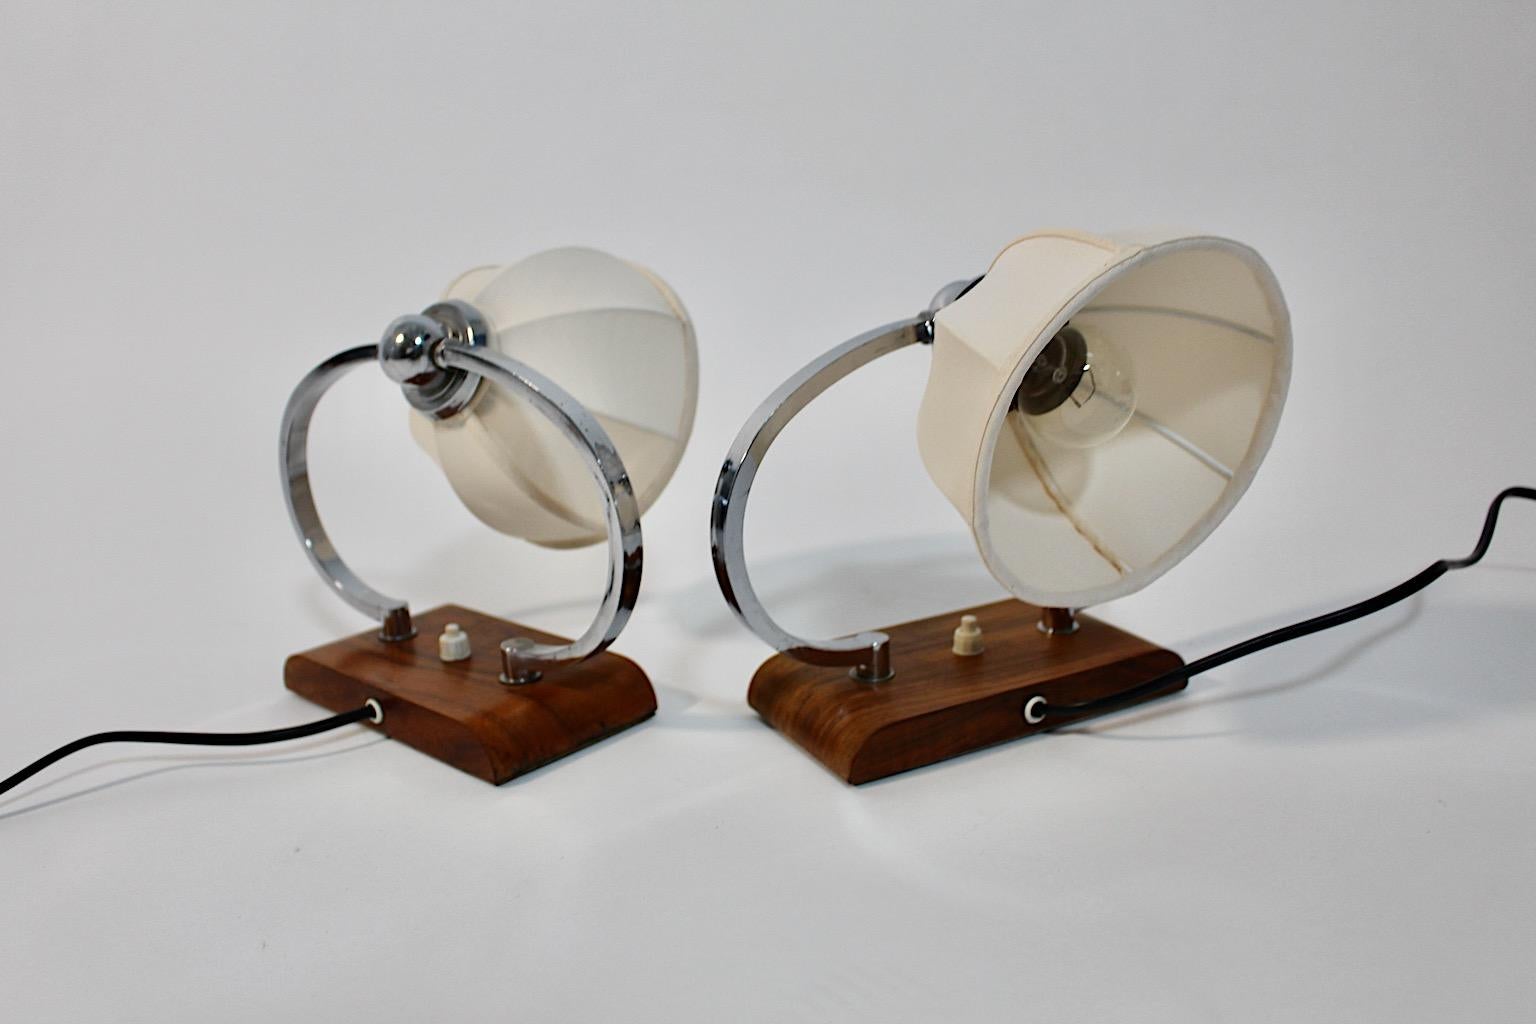 Art Deco vintage Paar Nachttischlampen oder Tischlampen aus Nussbaum und verchromtem Metall um 1925 Österreich.
Ein atemberaubendes Paar Nachttischlampen oder Tischlampen mit geschwungener Halterung aus verchromtem Metall und rechteckigem Sockel aus